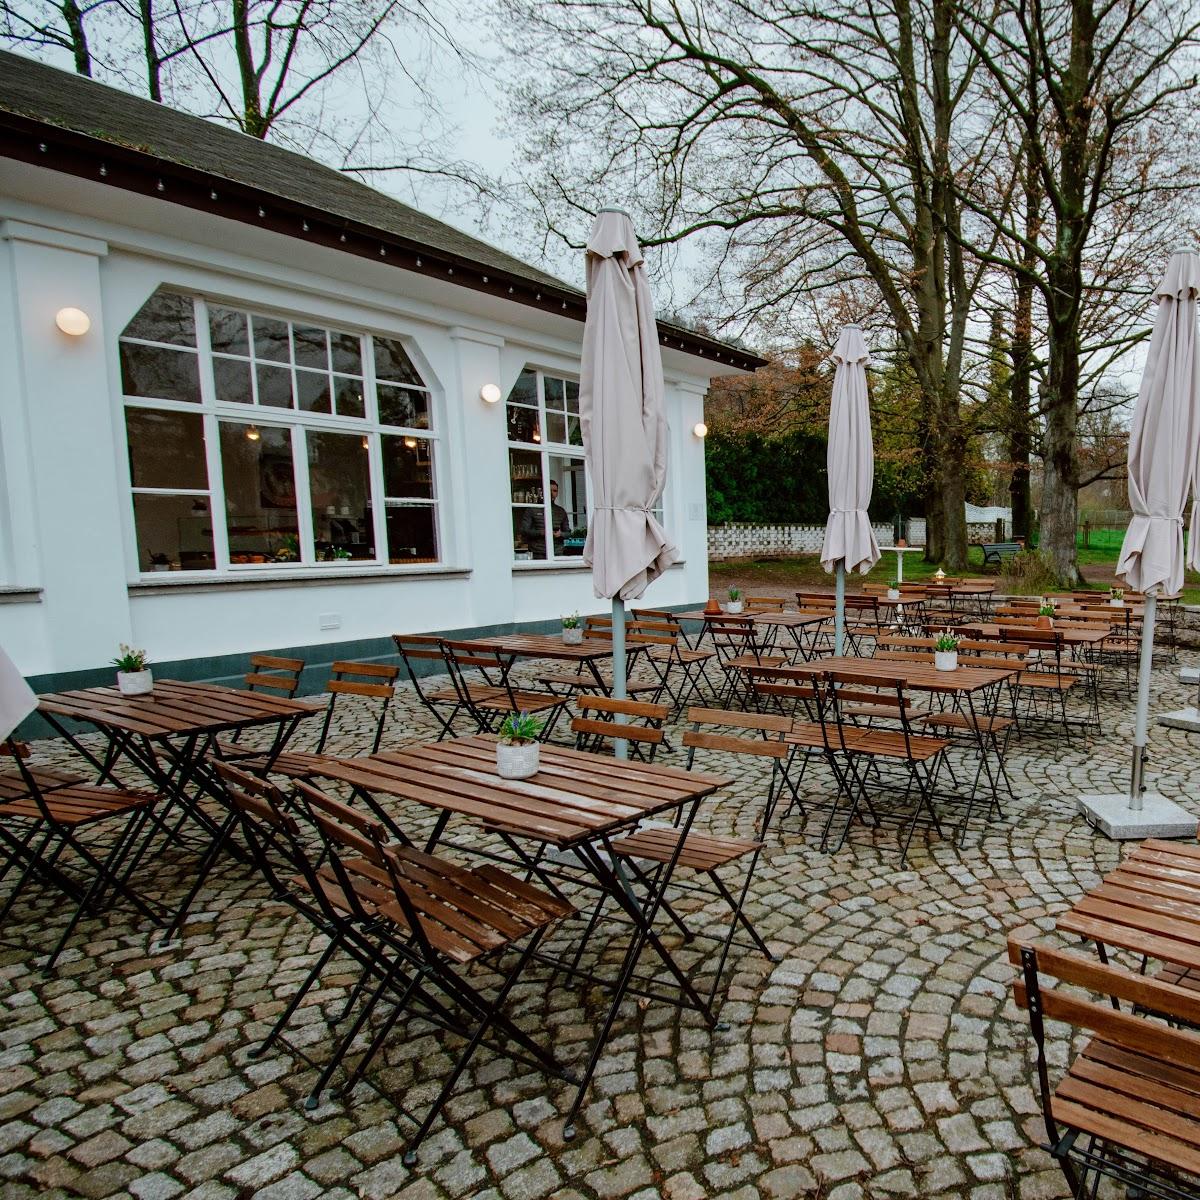 Restaurant "Die Teigmacher - Café & Eventlocation Lesehalle" in Bad Tabarz